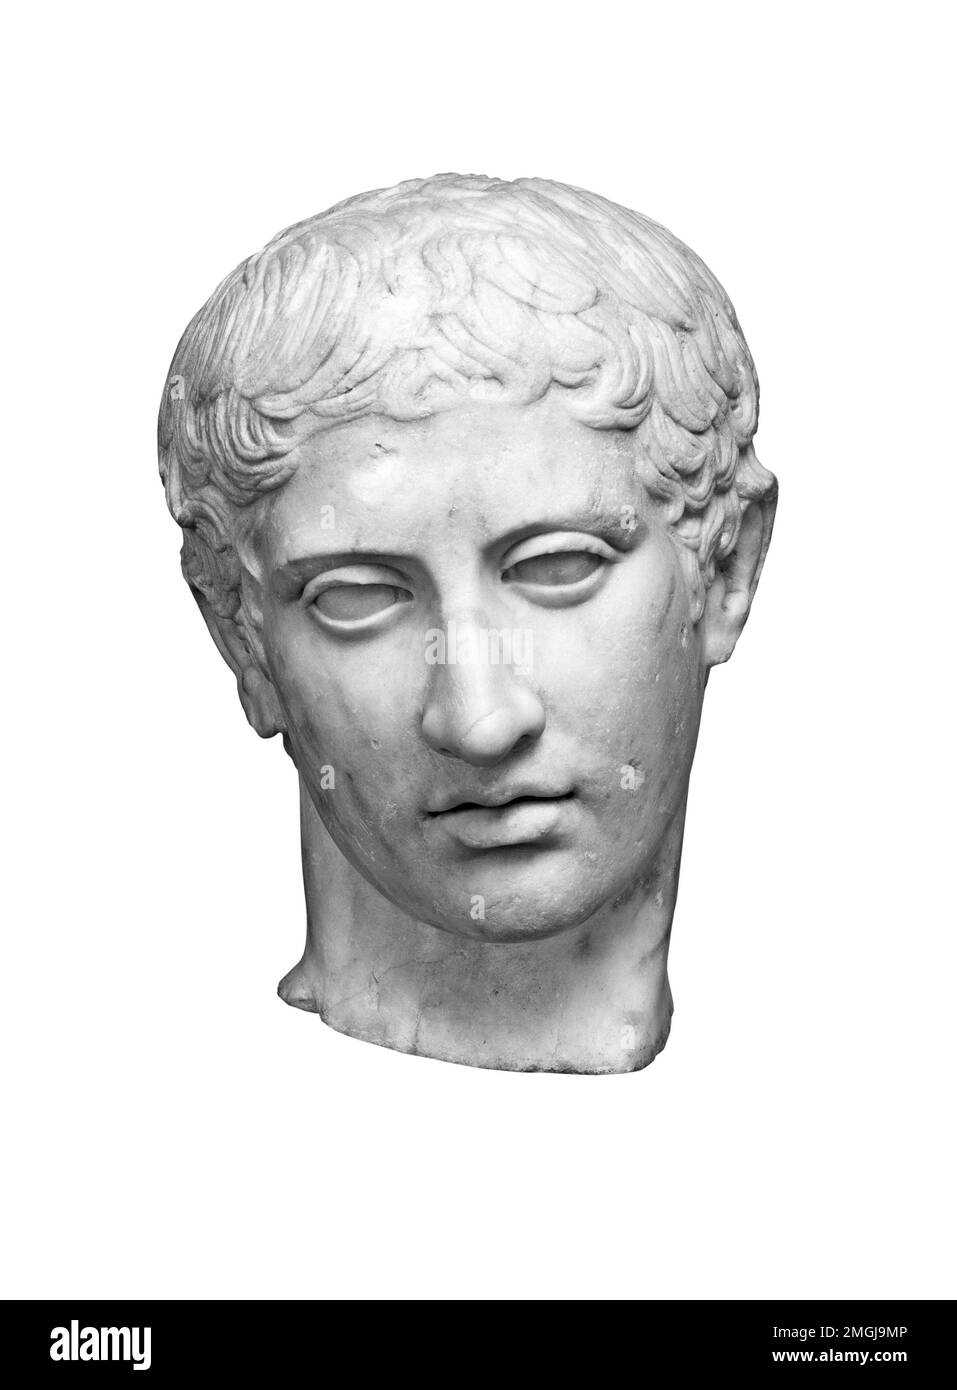 Tête en marbre antique d'un jeune homme, statue grecque classique, vue de face isolée en noir et blanc Banque D'Images